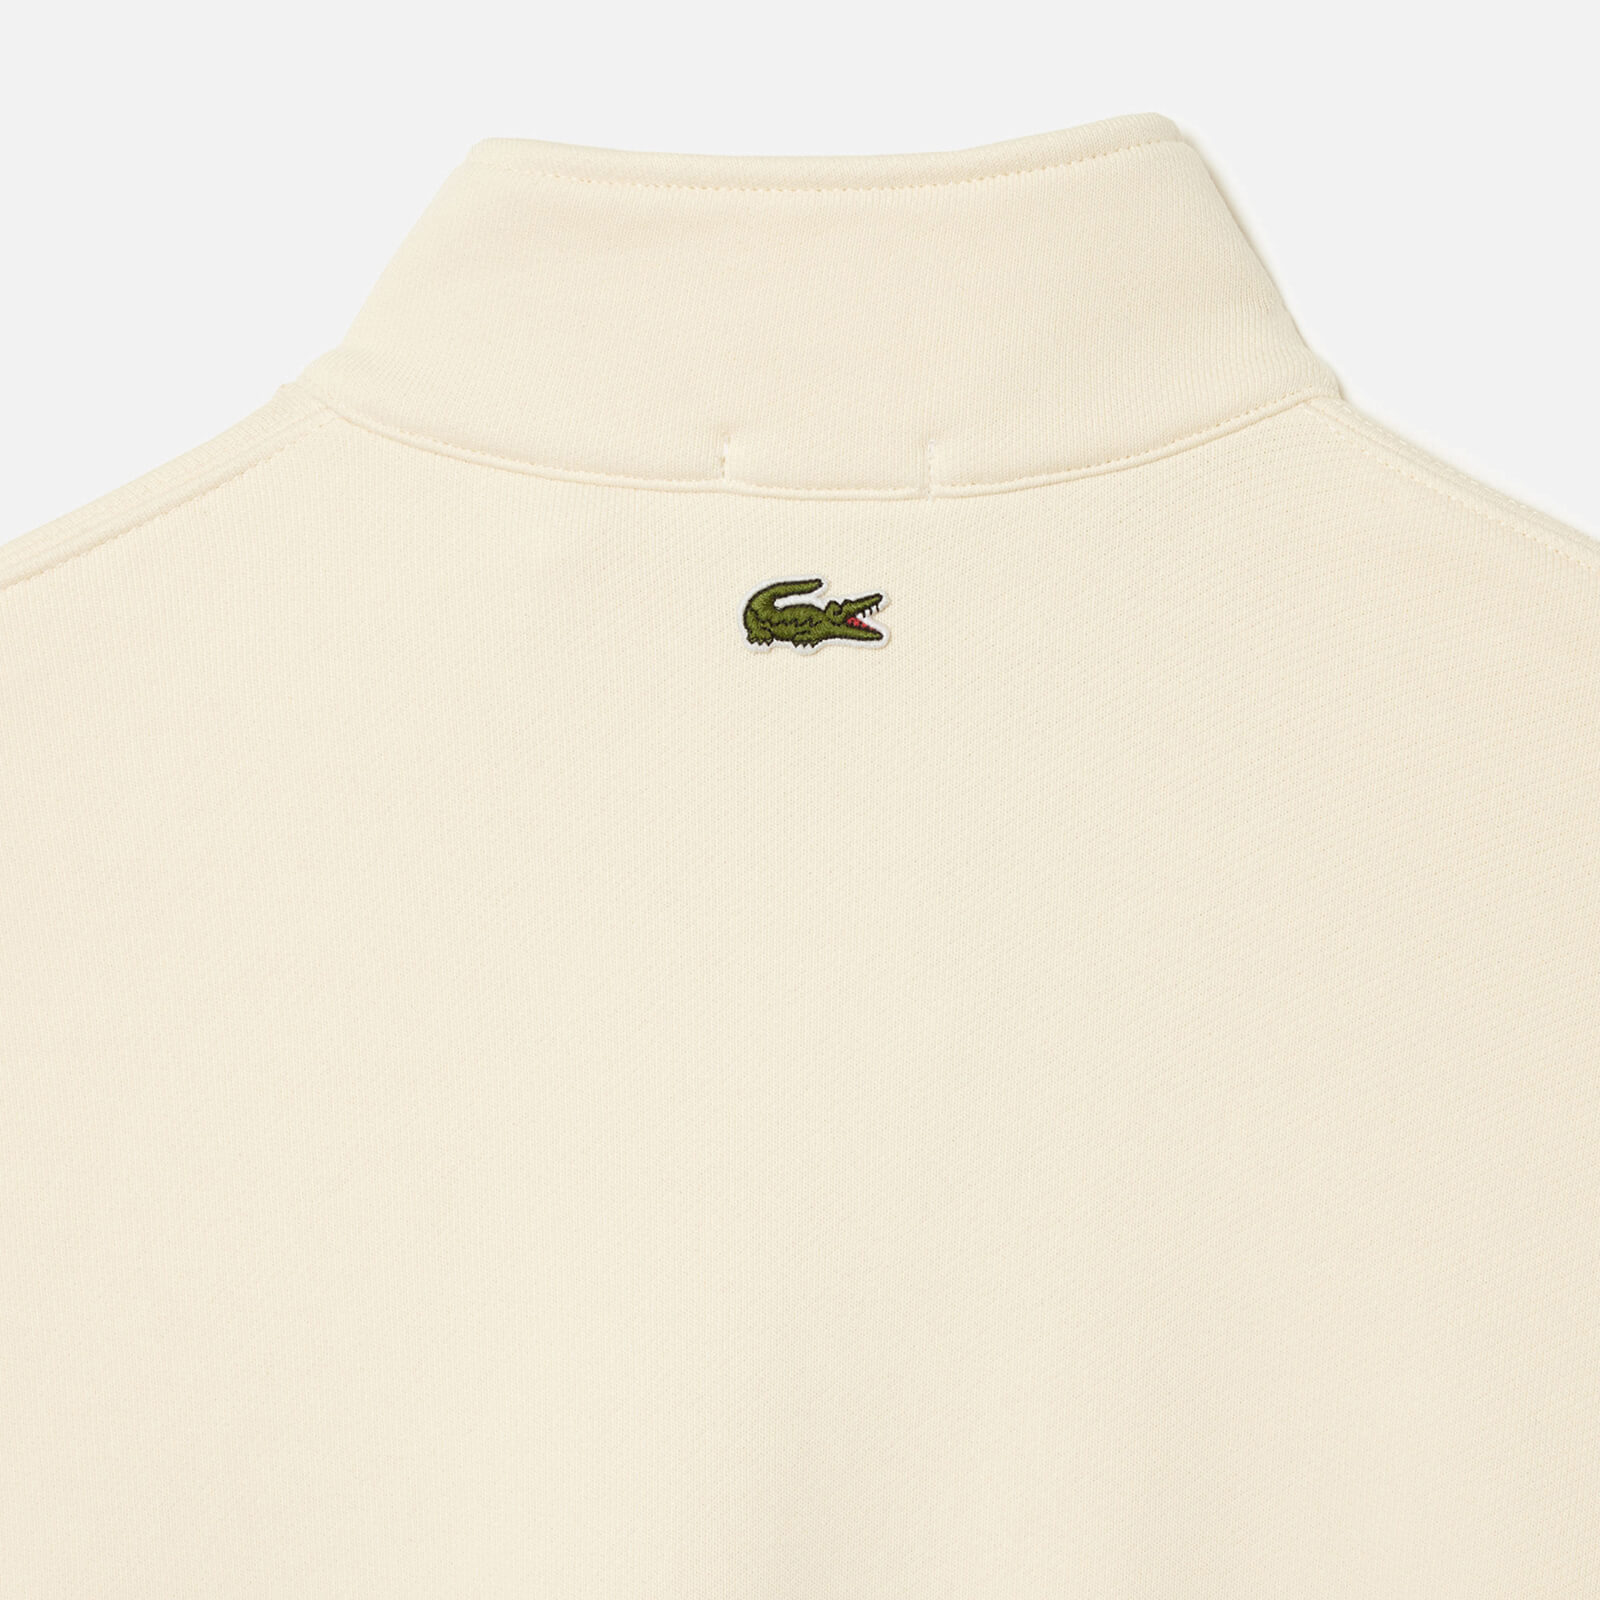 lacoste do croc 80's cotton-blend sweatshirt - xxl